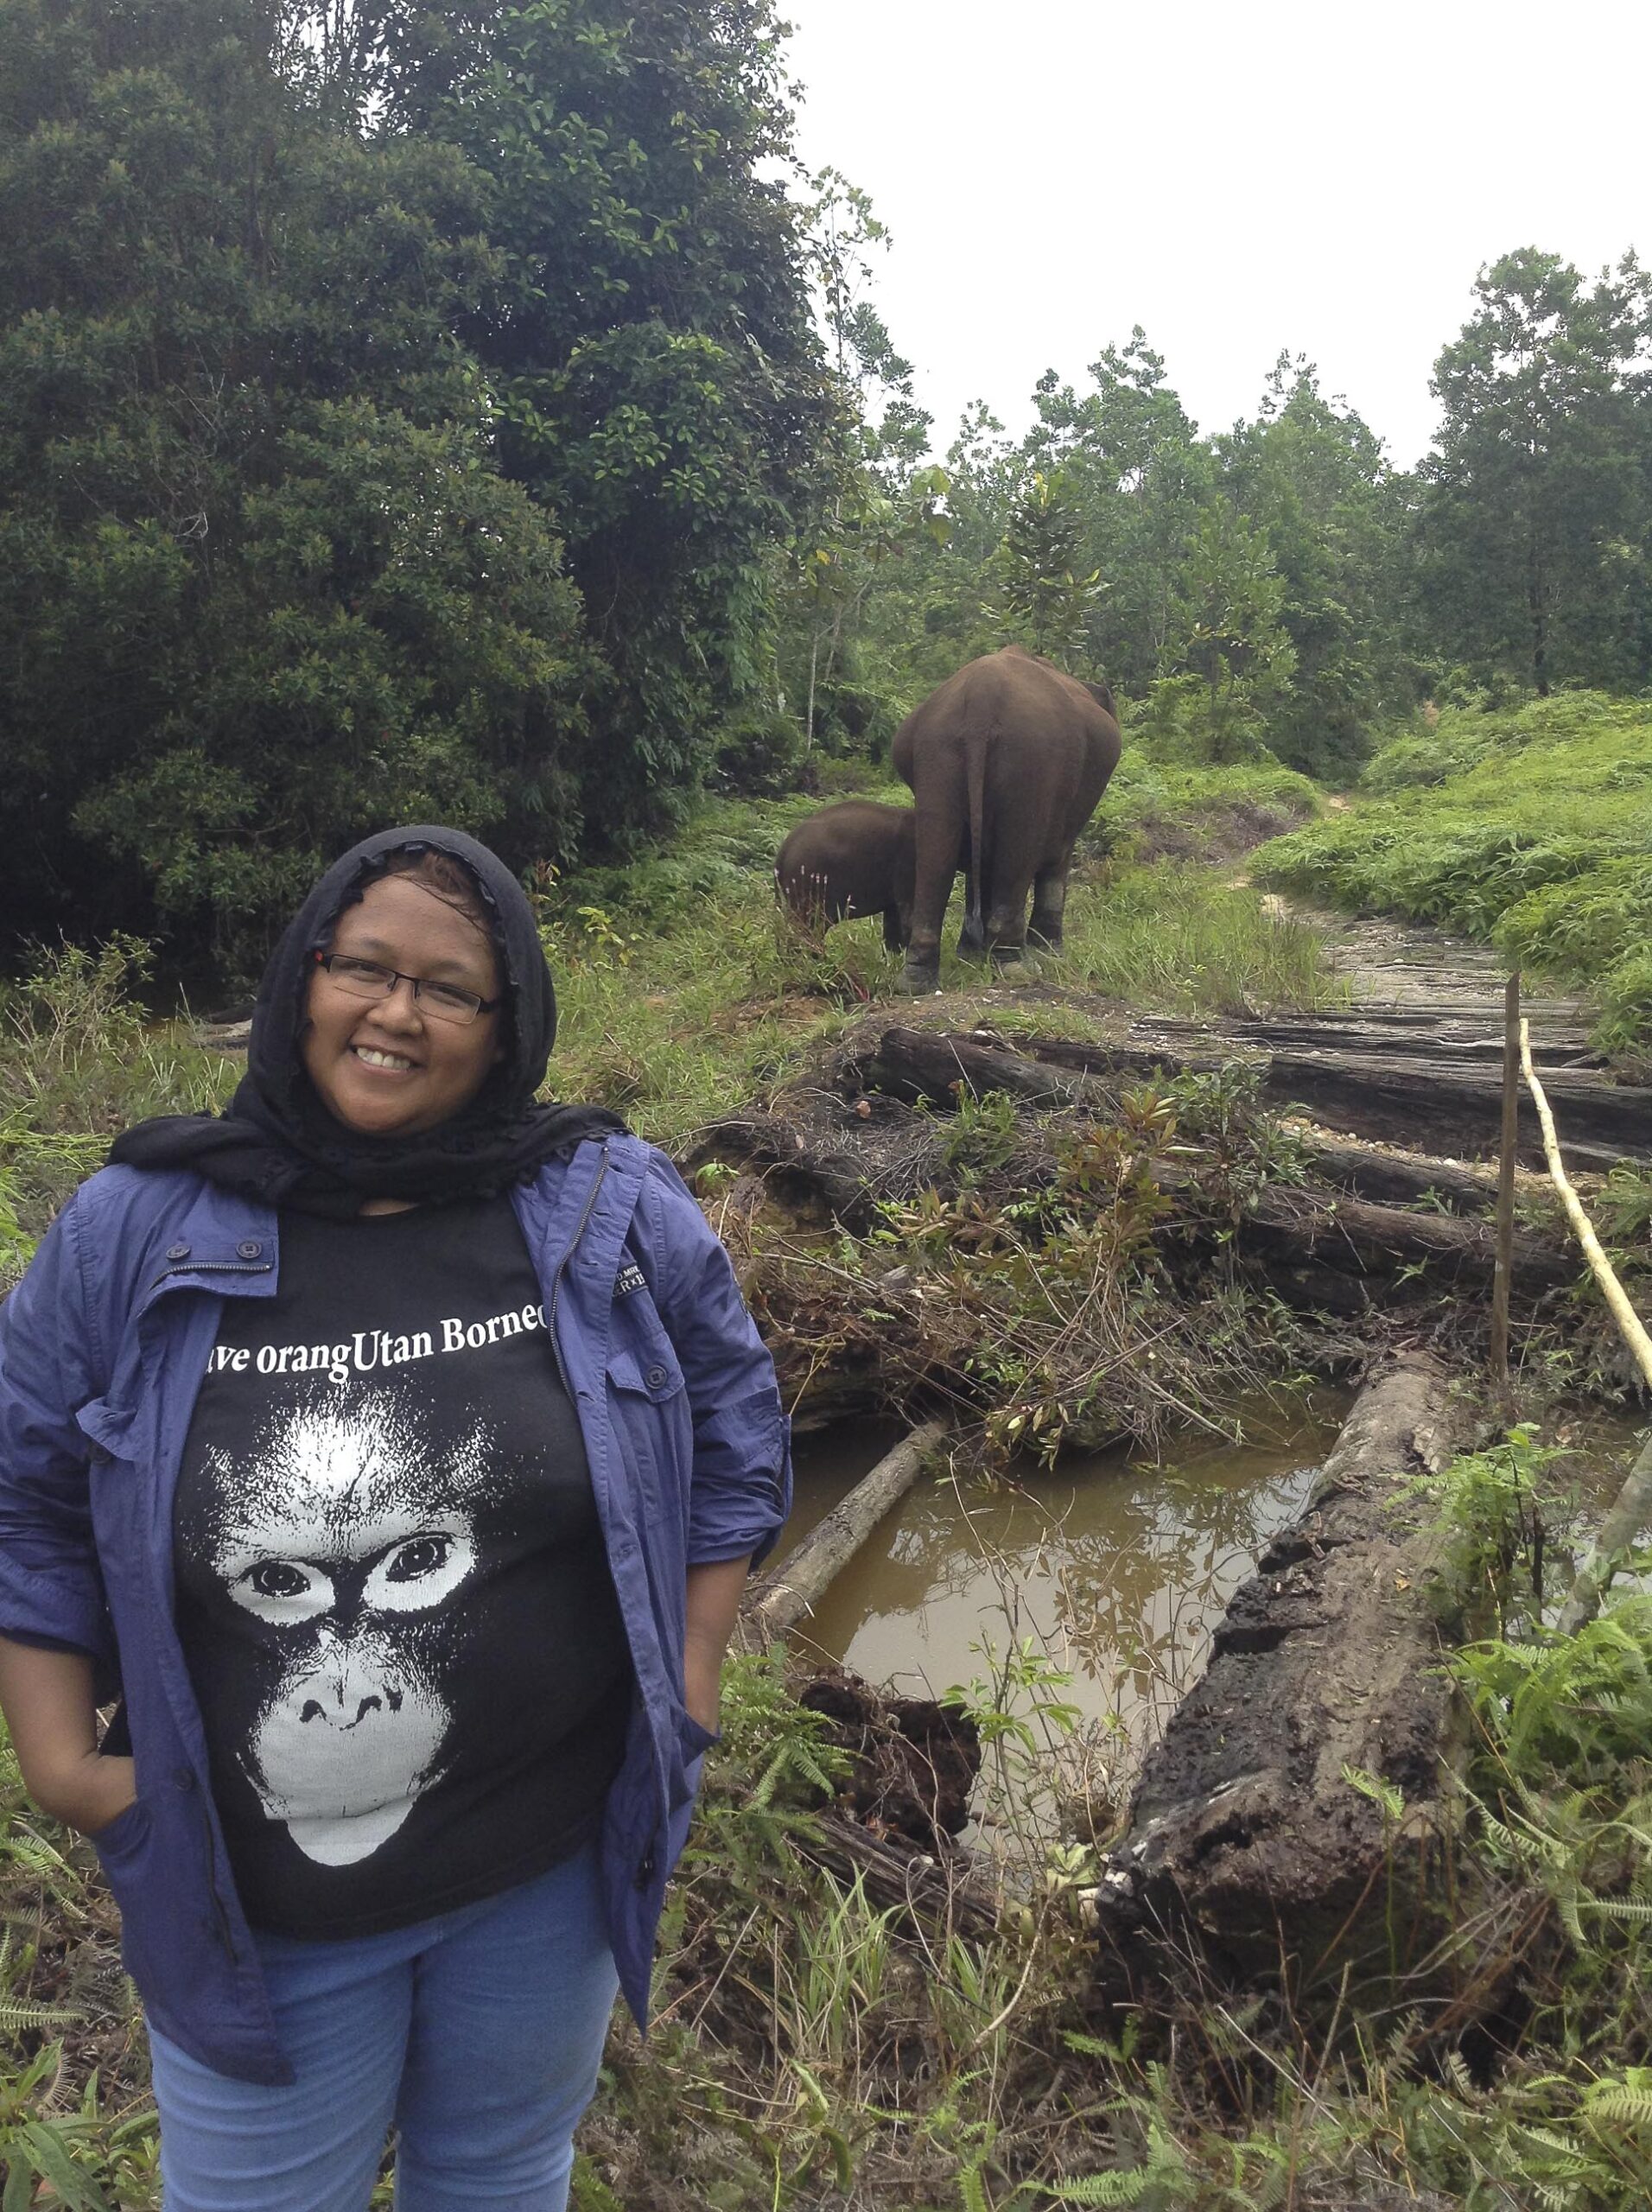 tesso nilo national park indonesia elephant conservation tour sanctuary sumatra 6 scaled